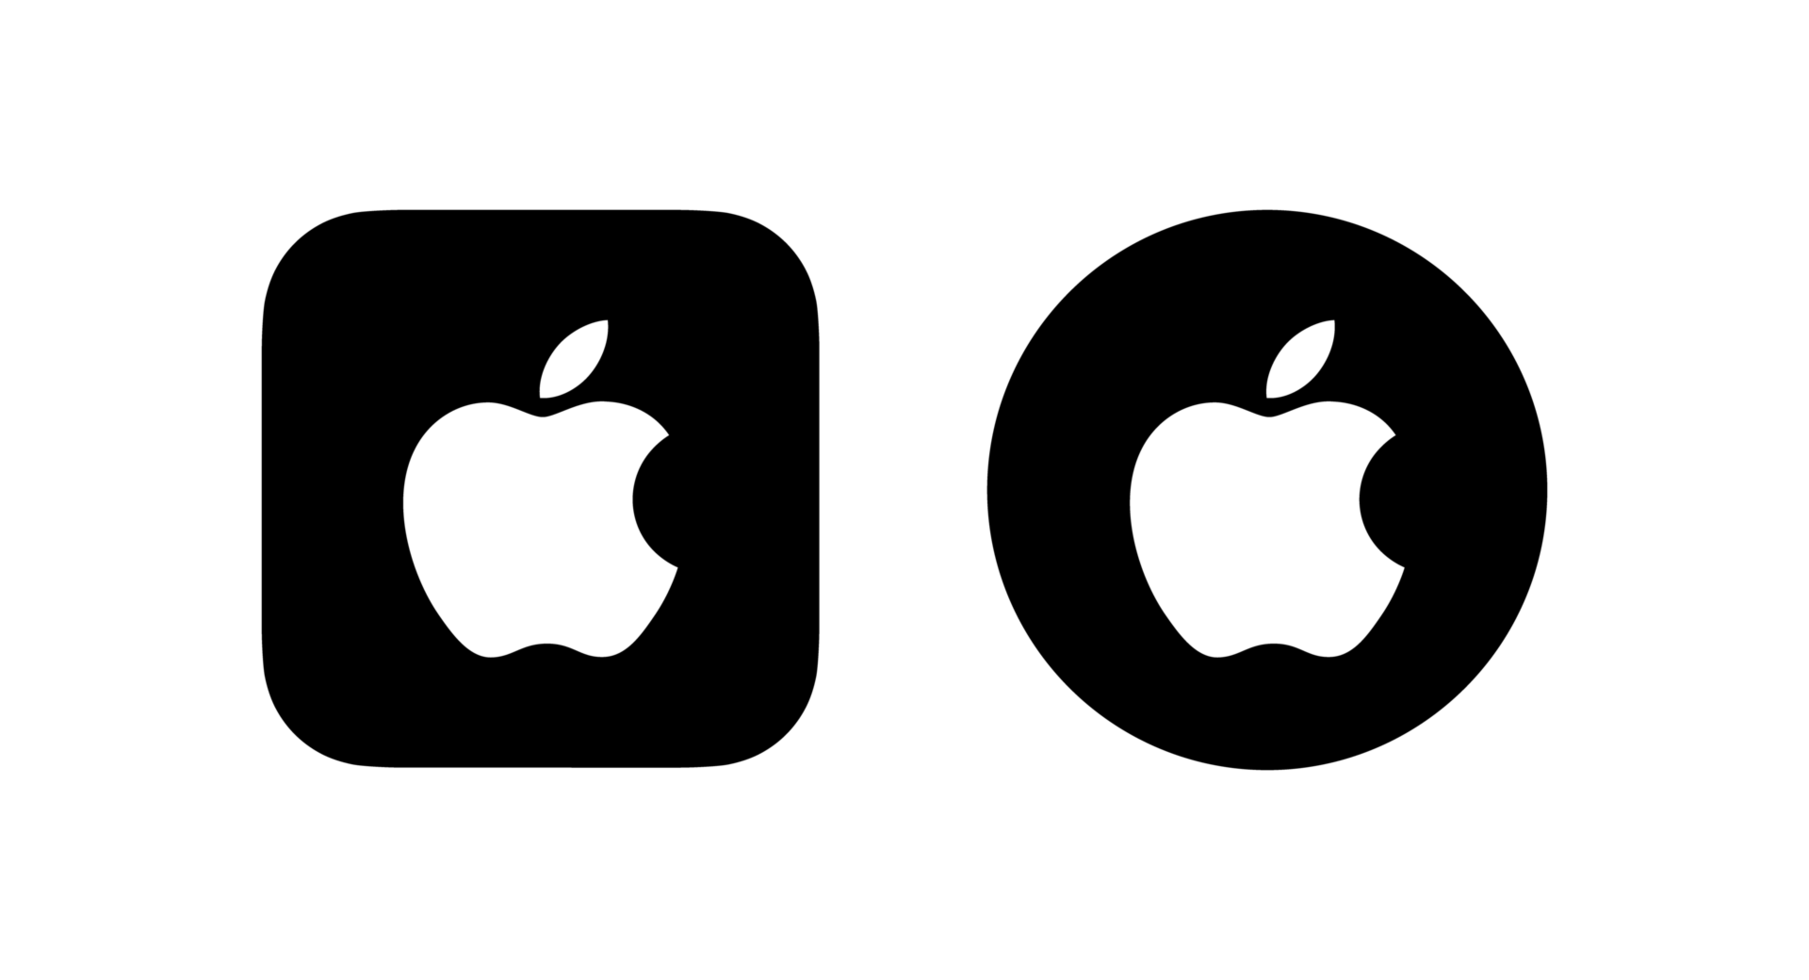 maçã logotipo png, maçã ícone transparente png